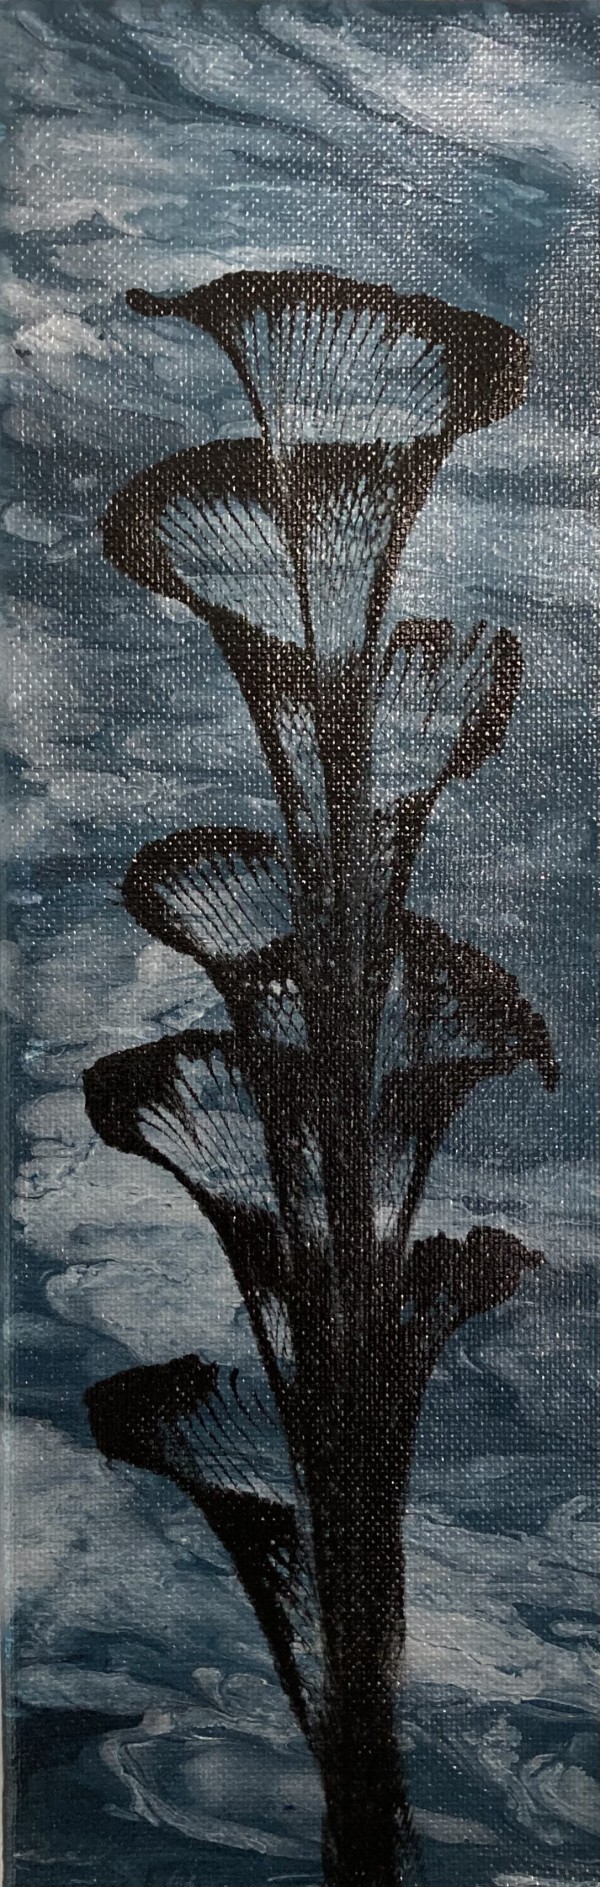 Black Flower on Blue by Helen Renfrew